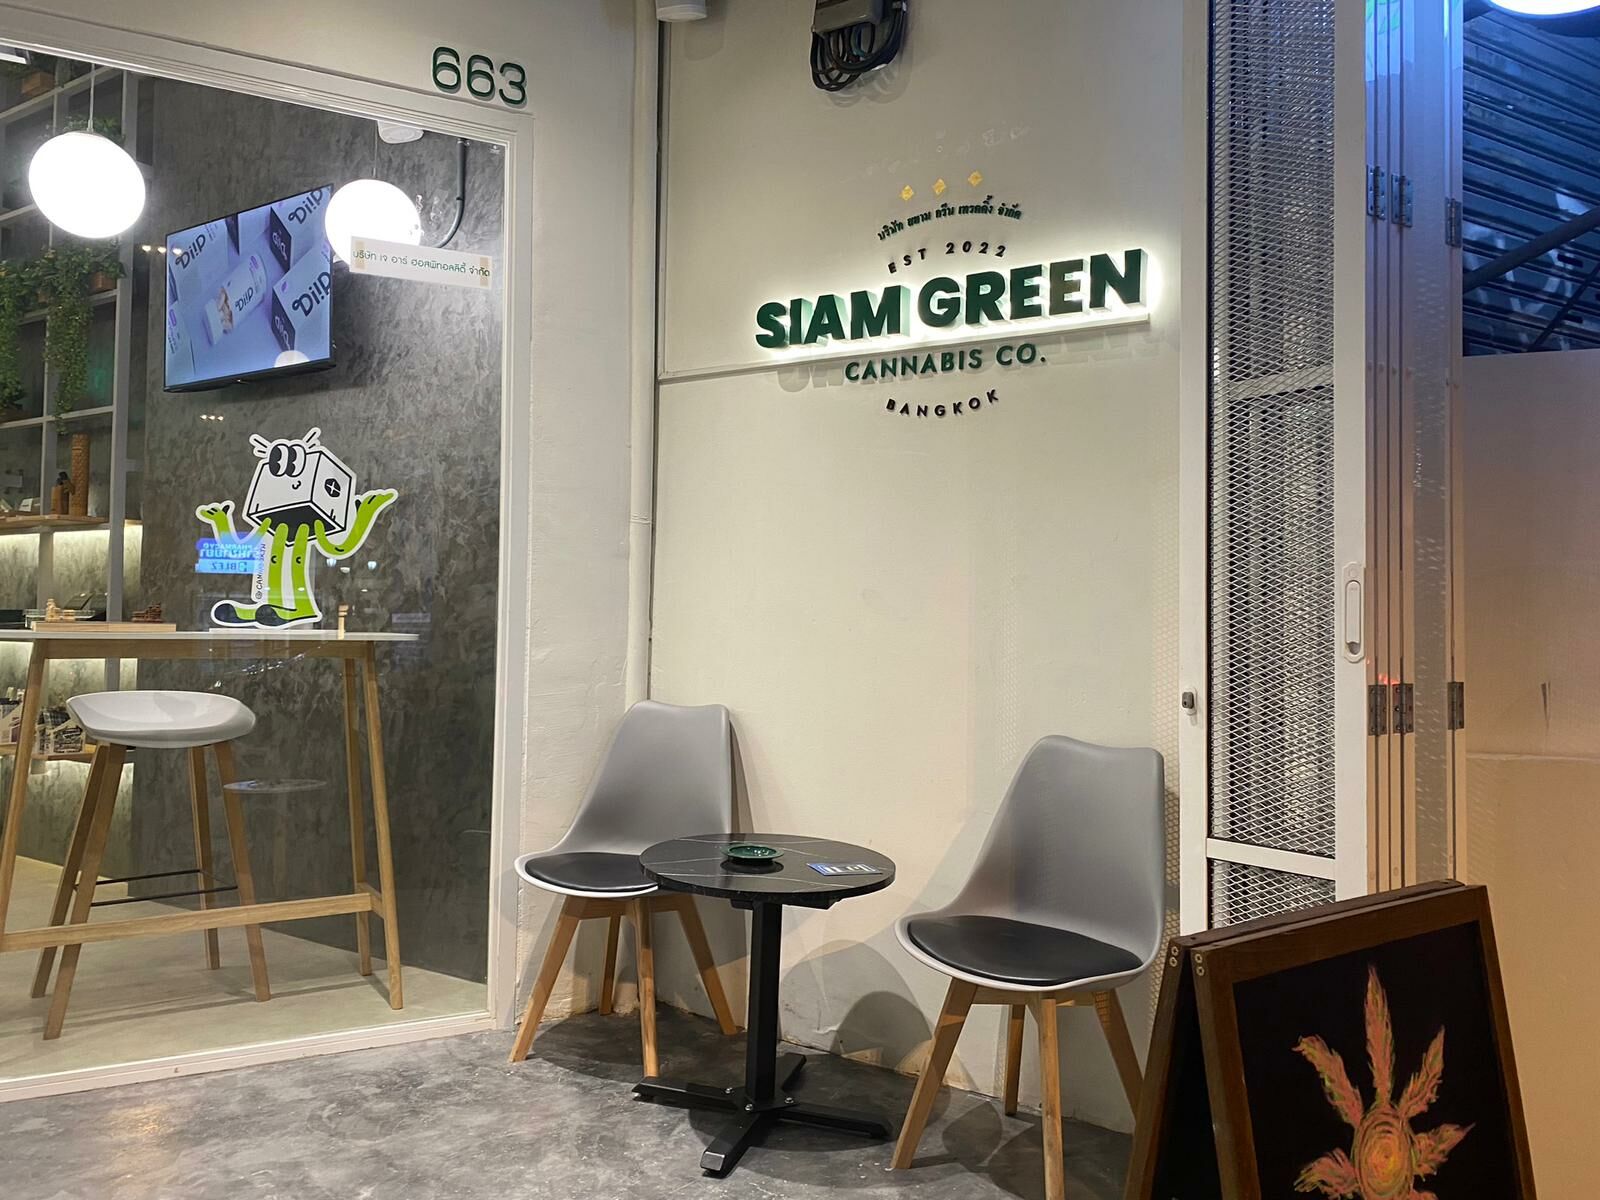 اتخذ خيارات أكثر ذكاءً مع شركة Siam Green Cannabis Co.، المكان المفضل لديك لشراء القنب واتفاقية التنوع البيولوجي - اتصال برنامج الماريجوانا الطبية